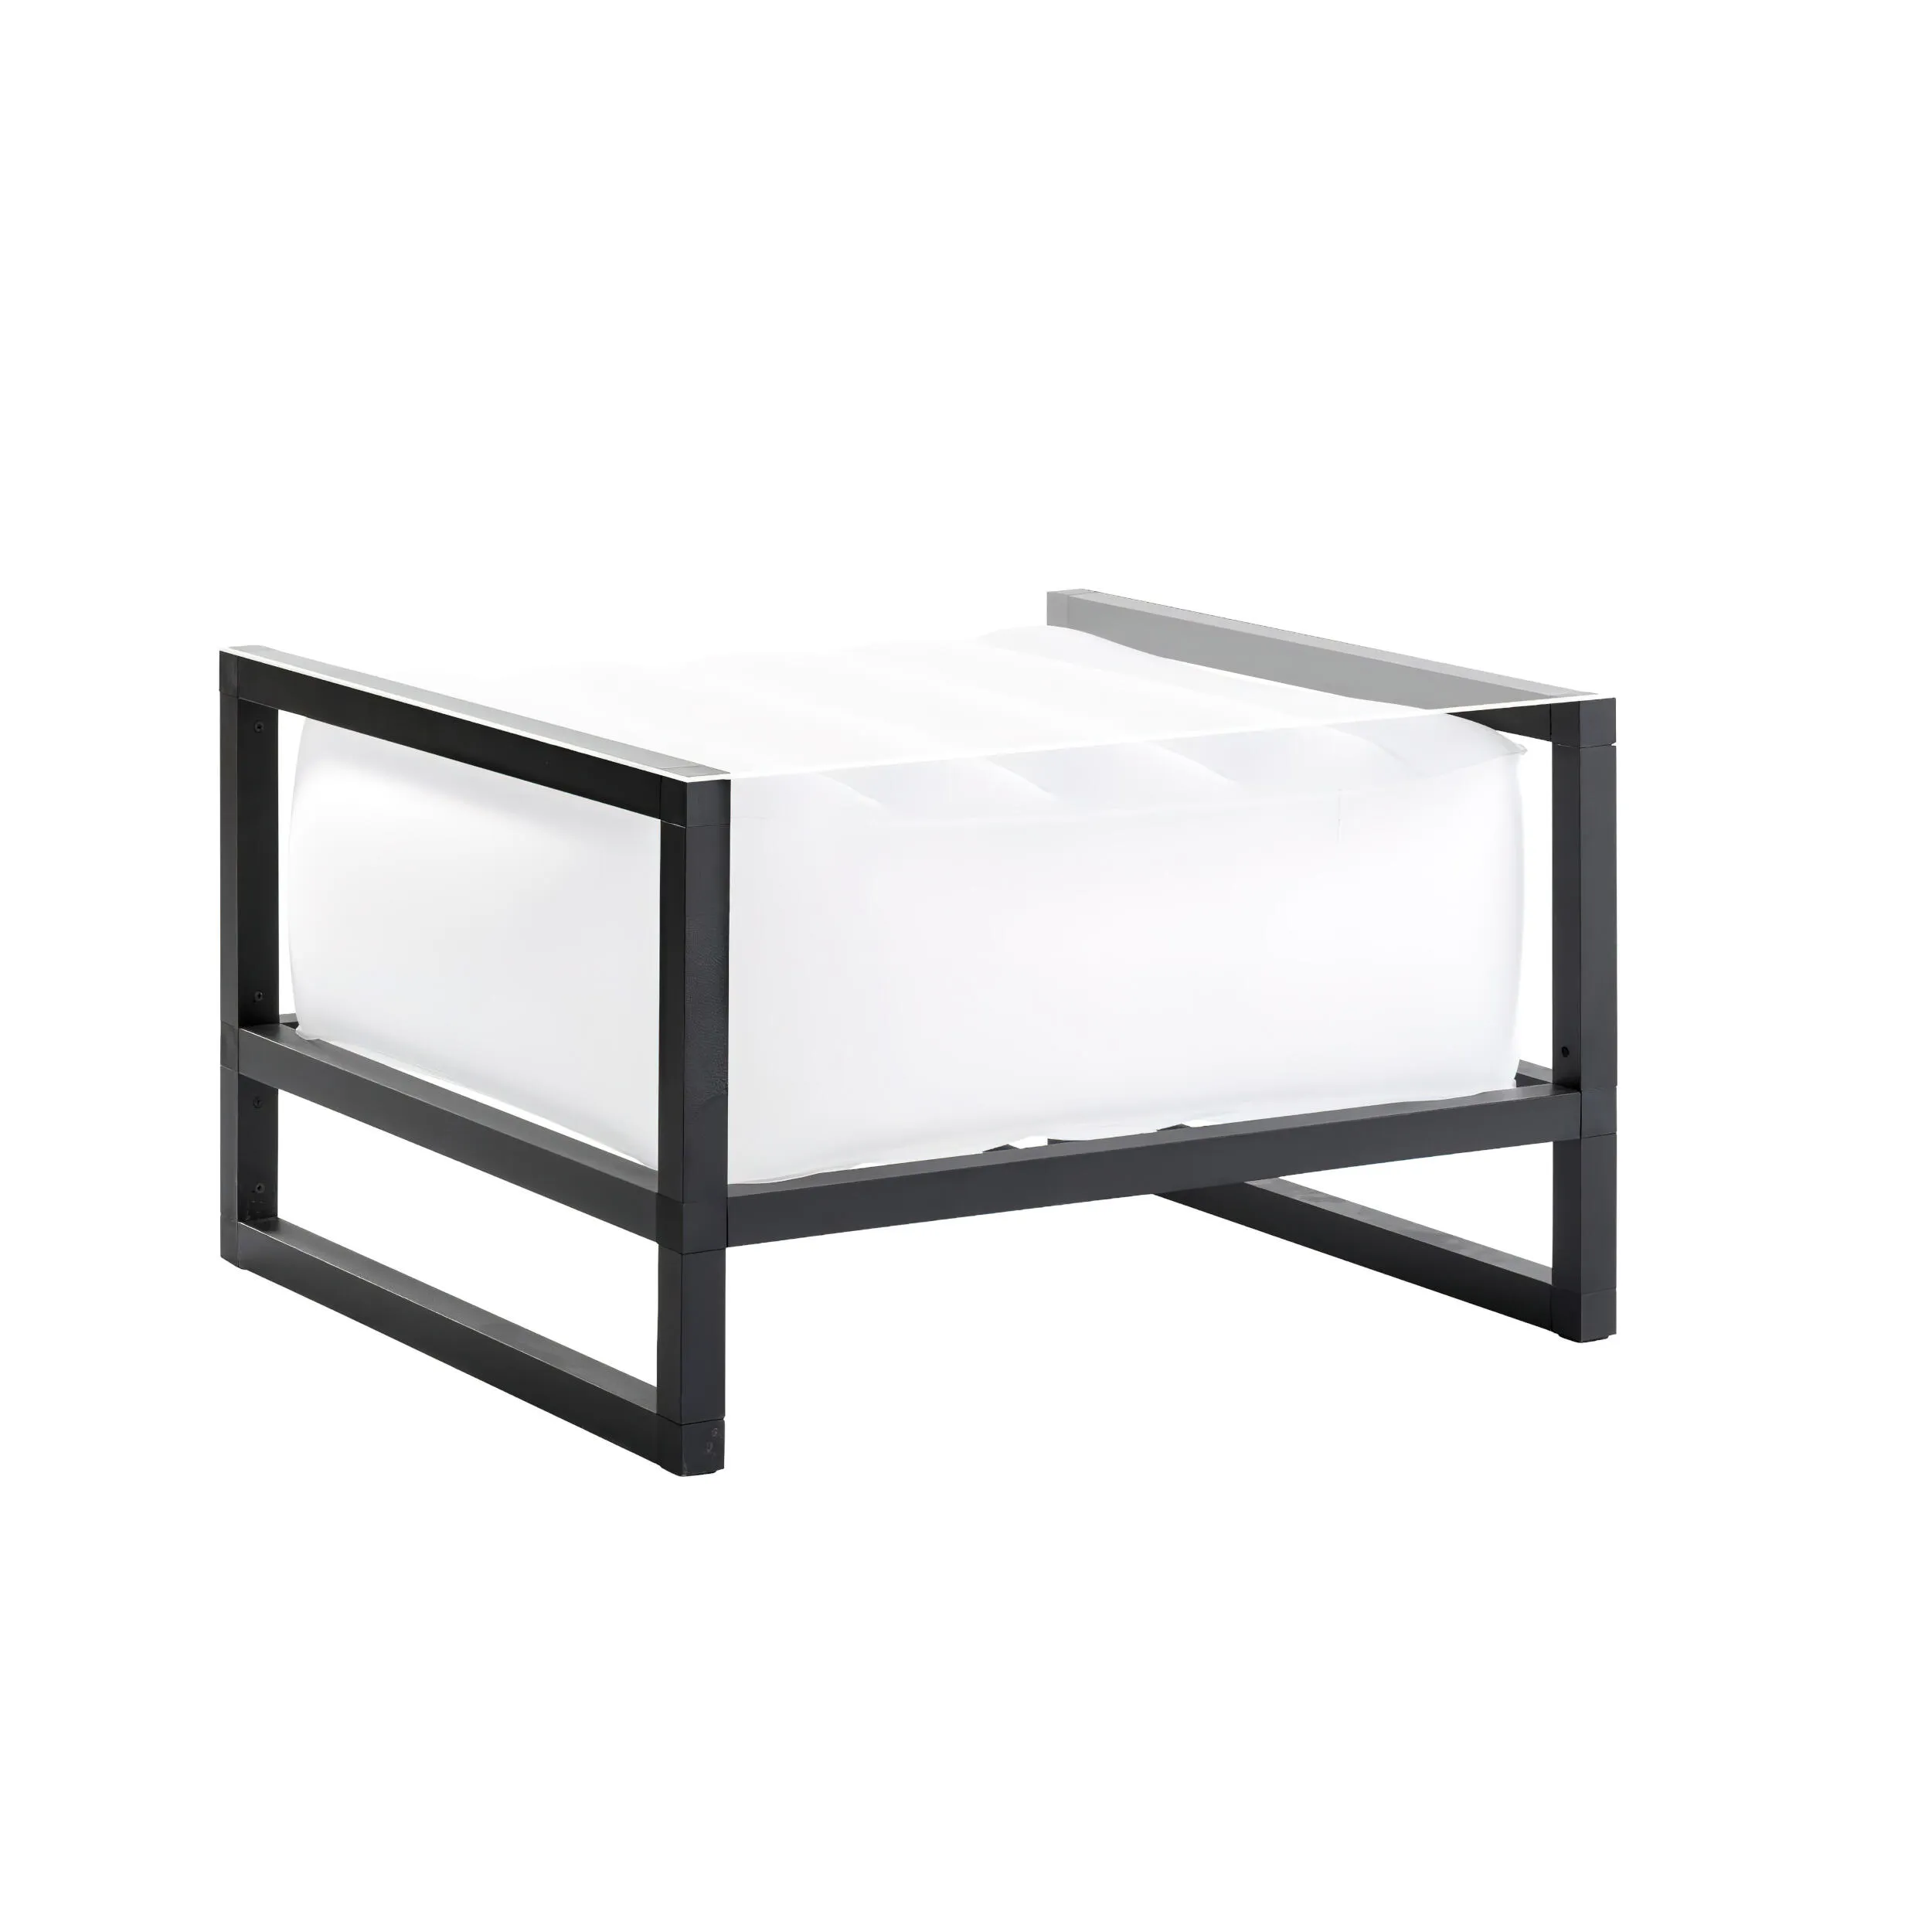 tavolino da salotto Yomi eko illuminato struttura in legno nero, dimensioni 62x70xH40 cm peso 14 kg, seduta gonfiabile in TPU colore bianco traslucido